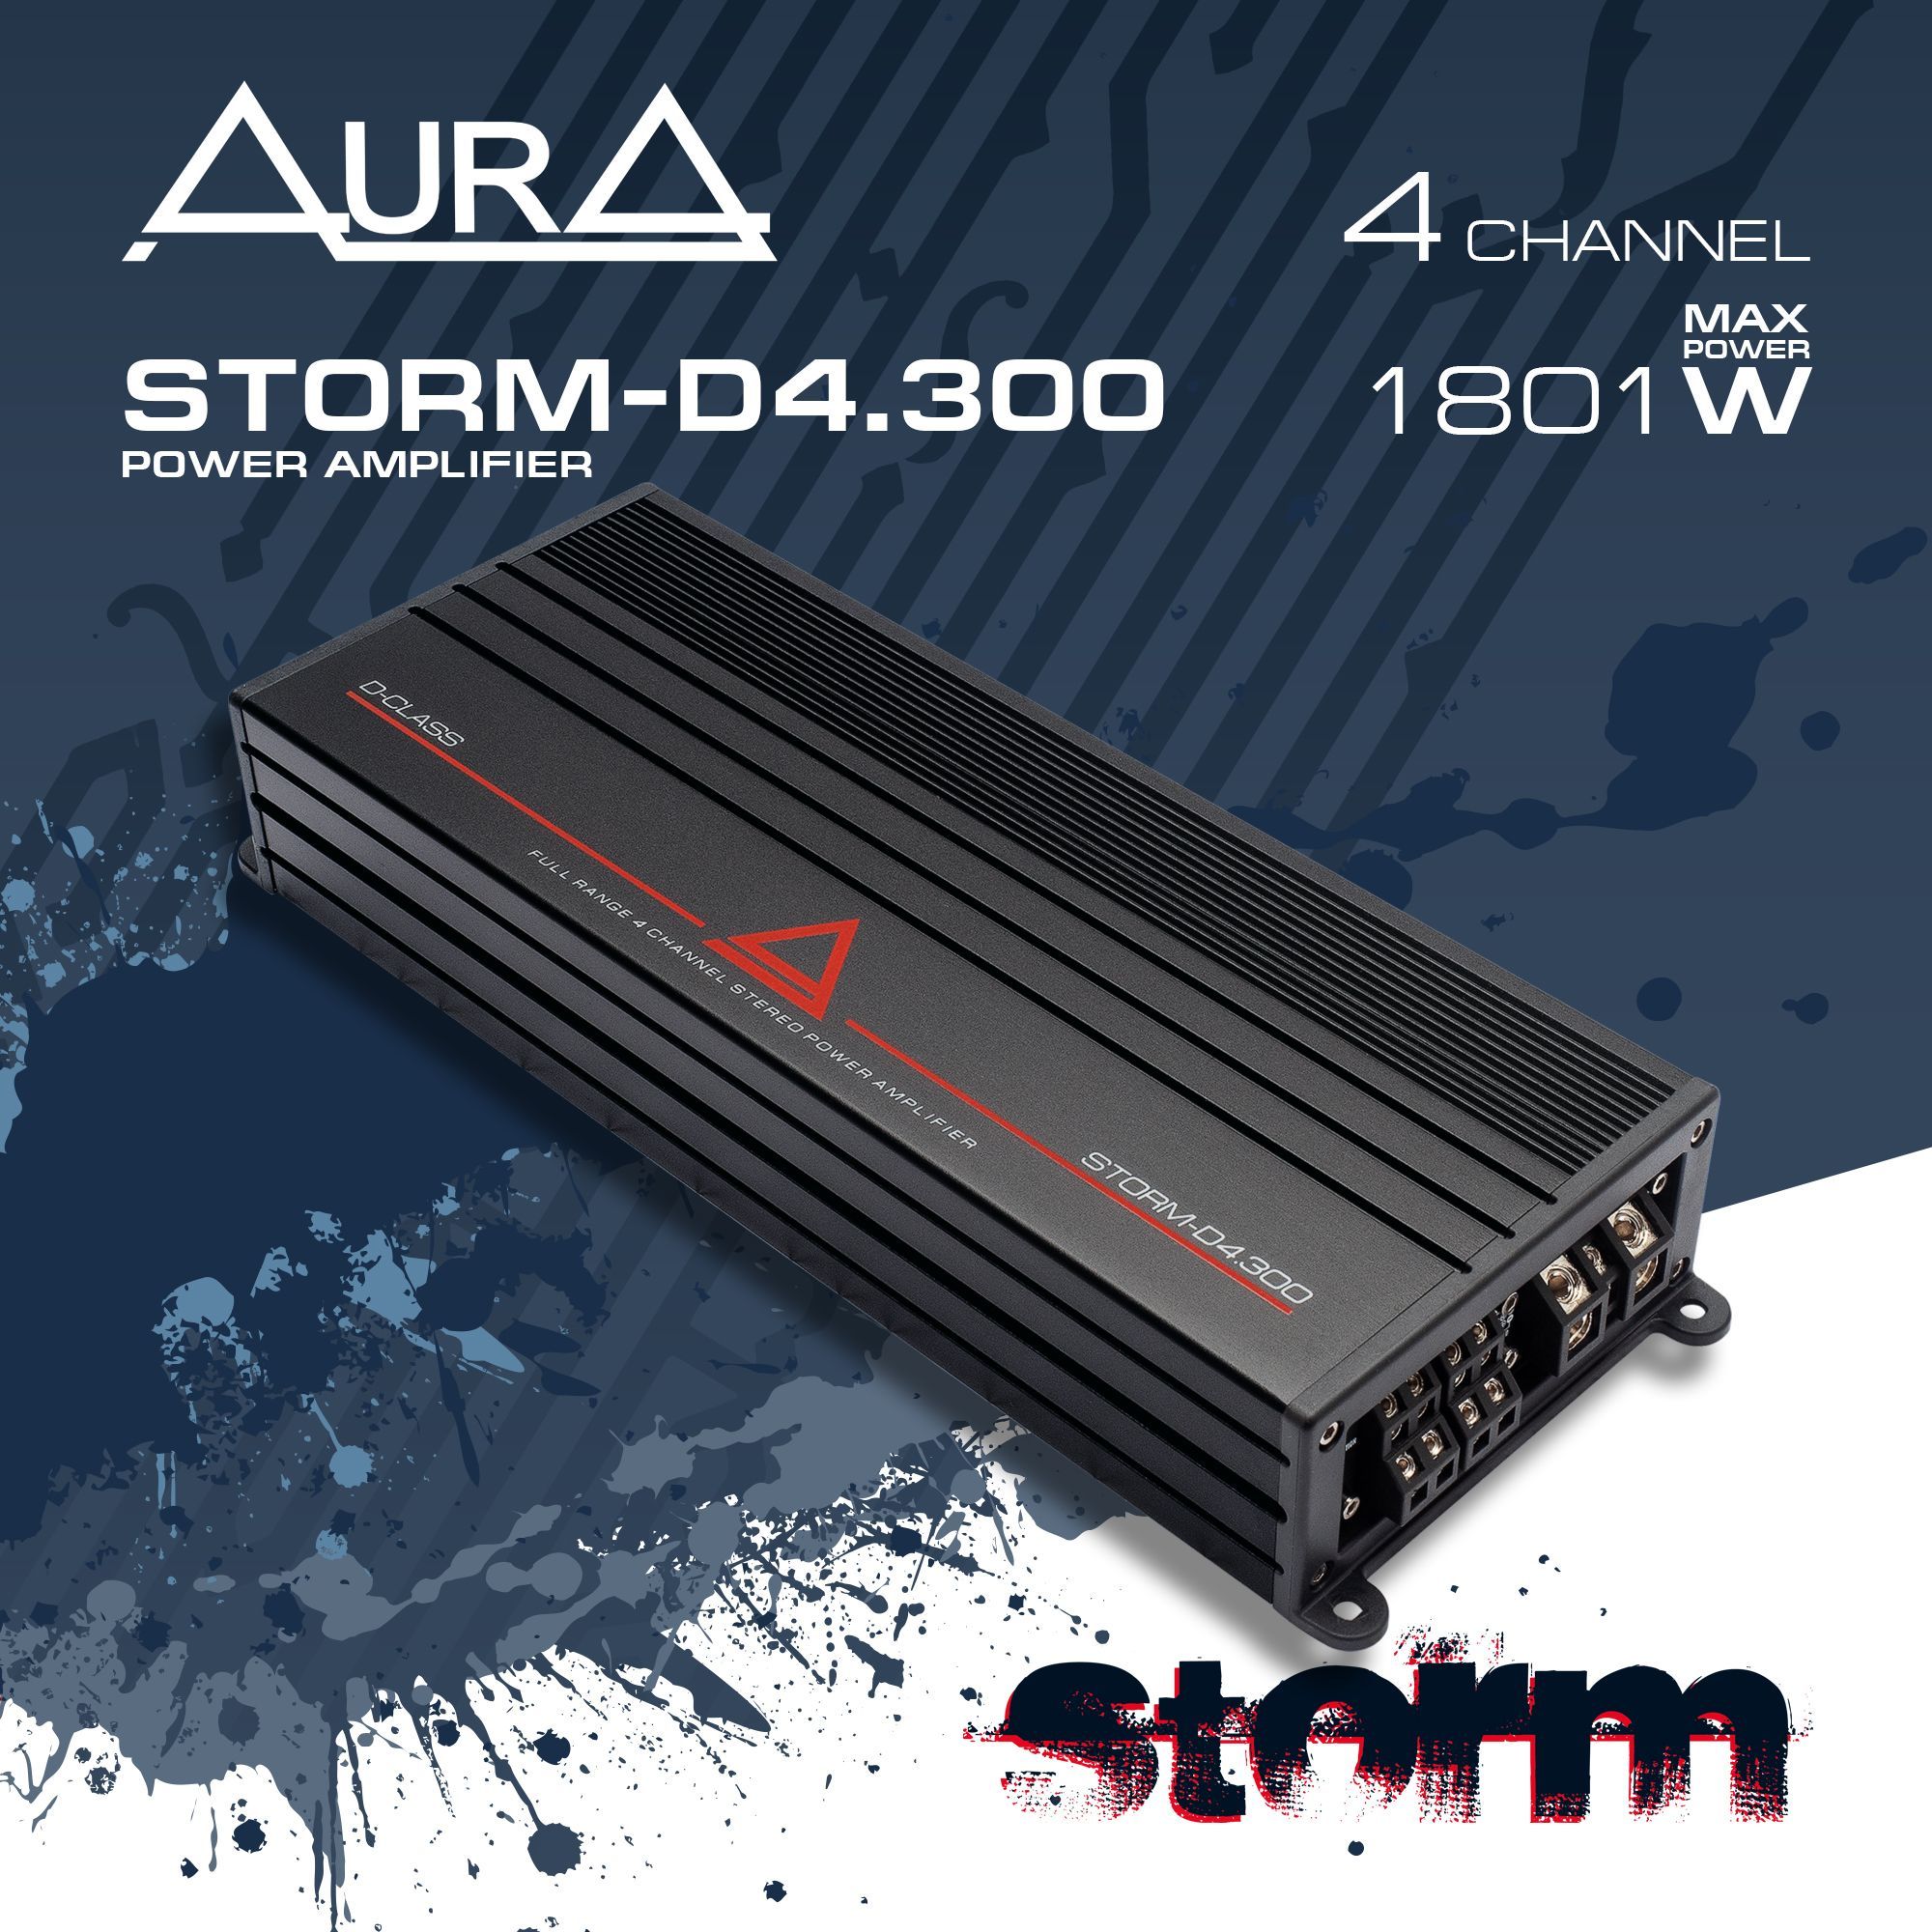 Aura storm d